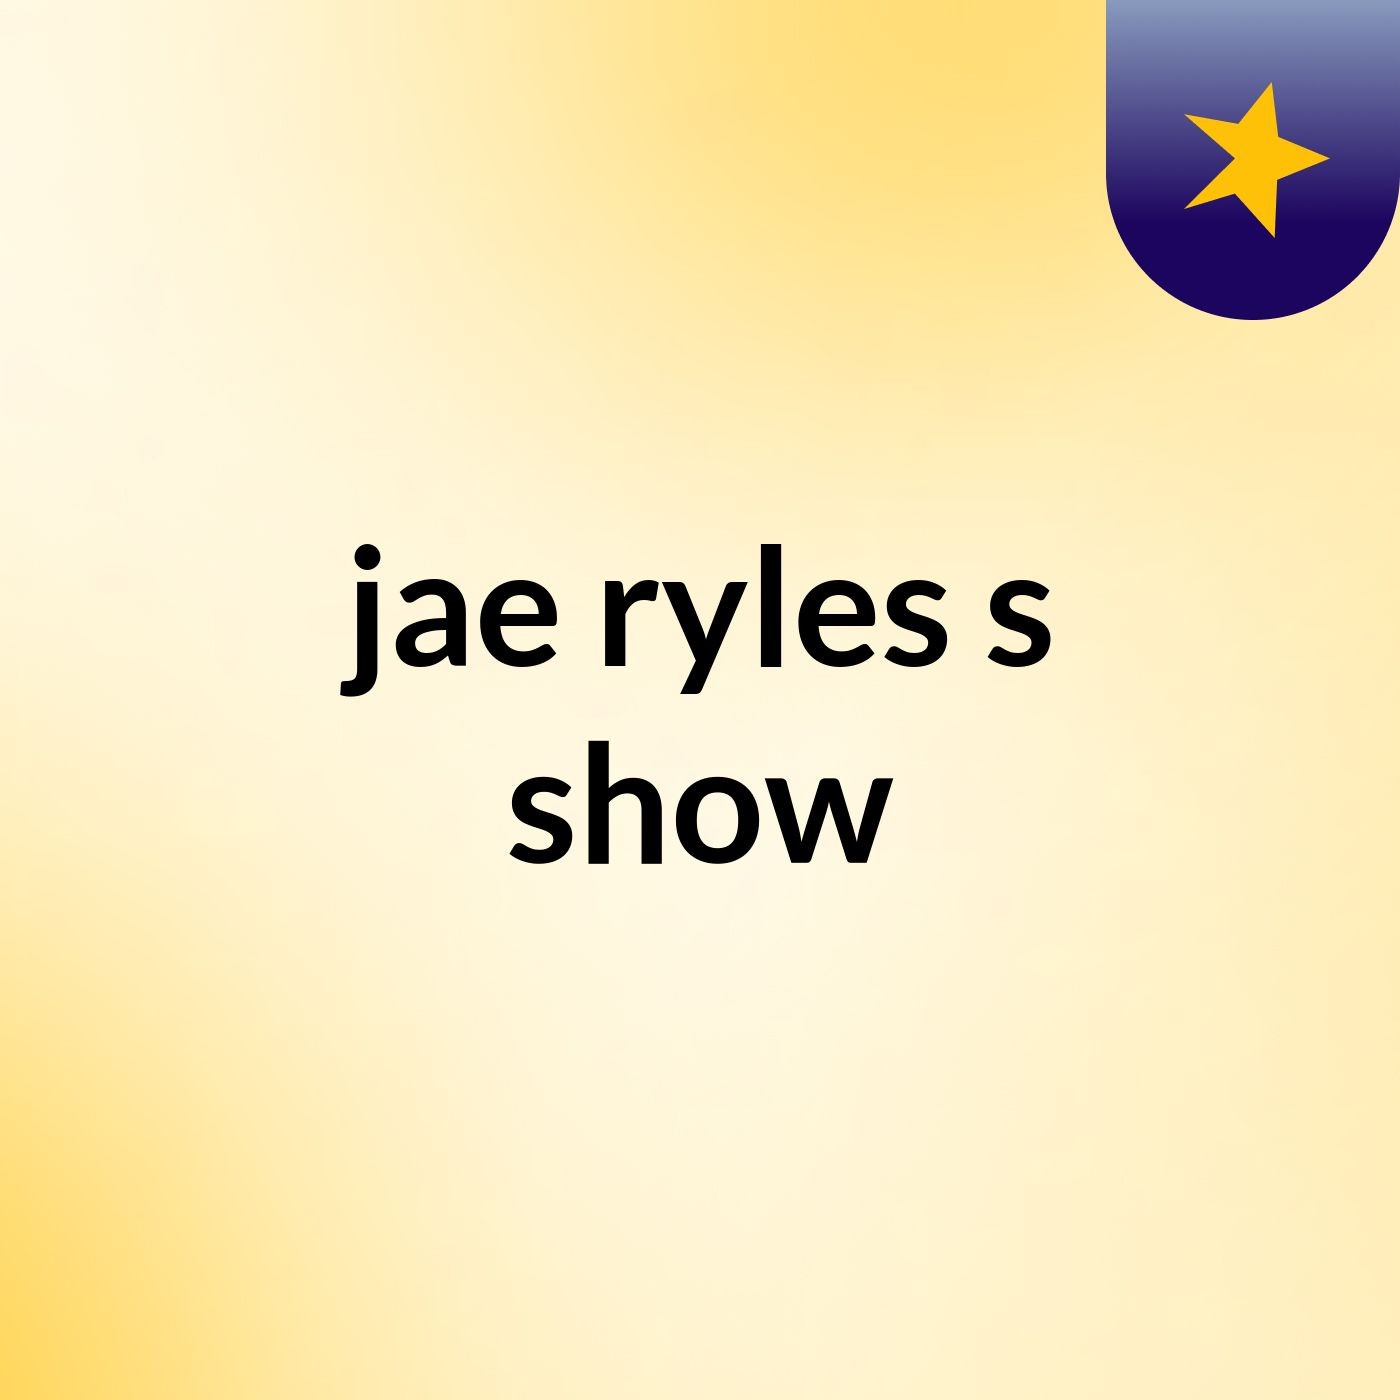 jae ryles's show